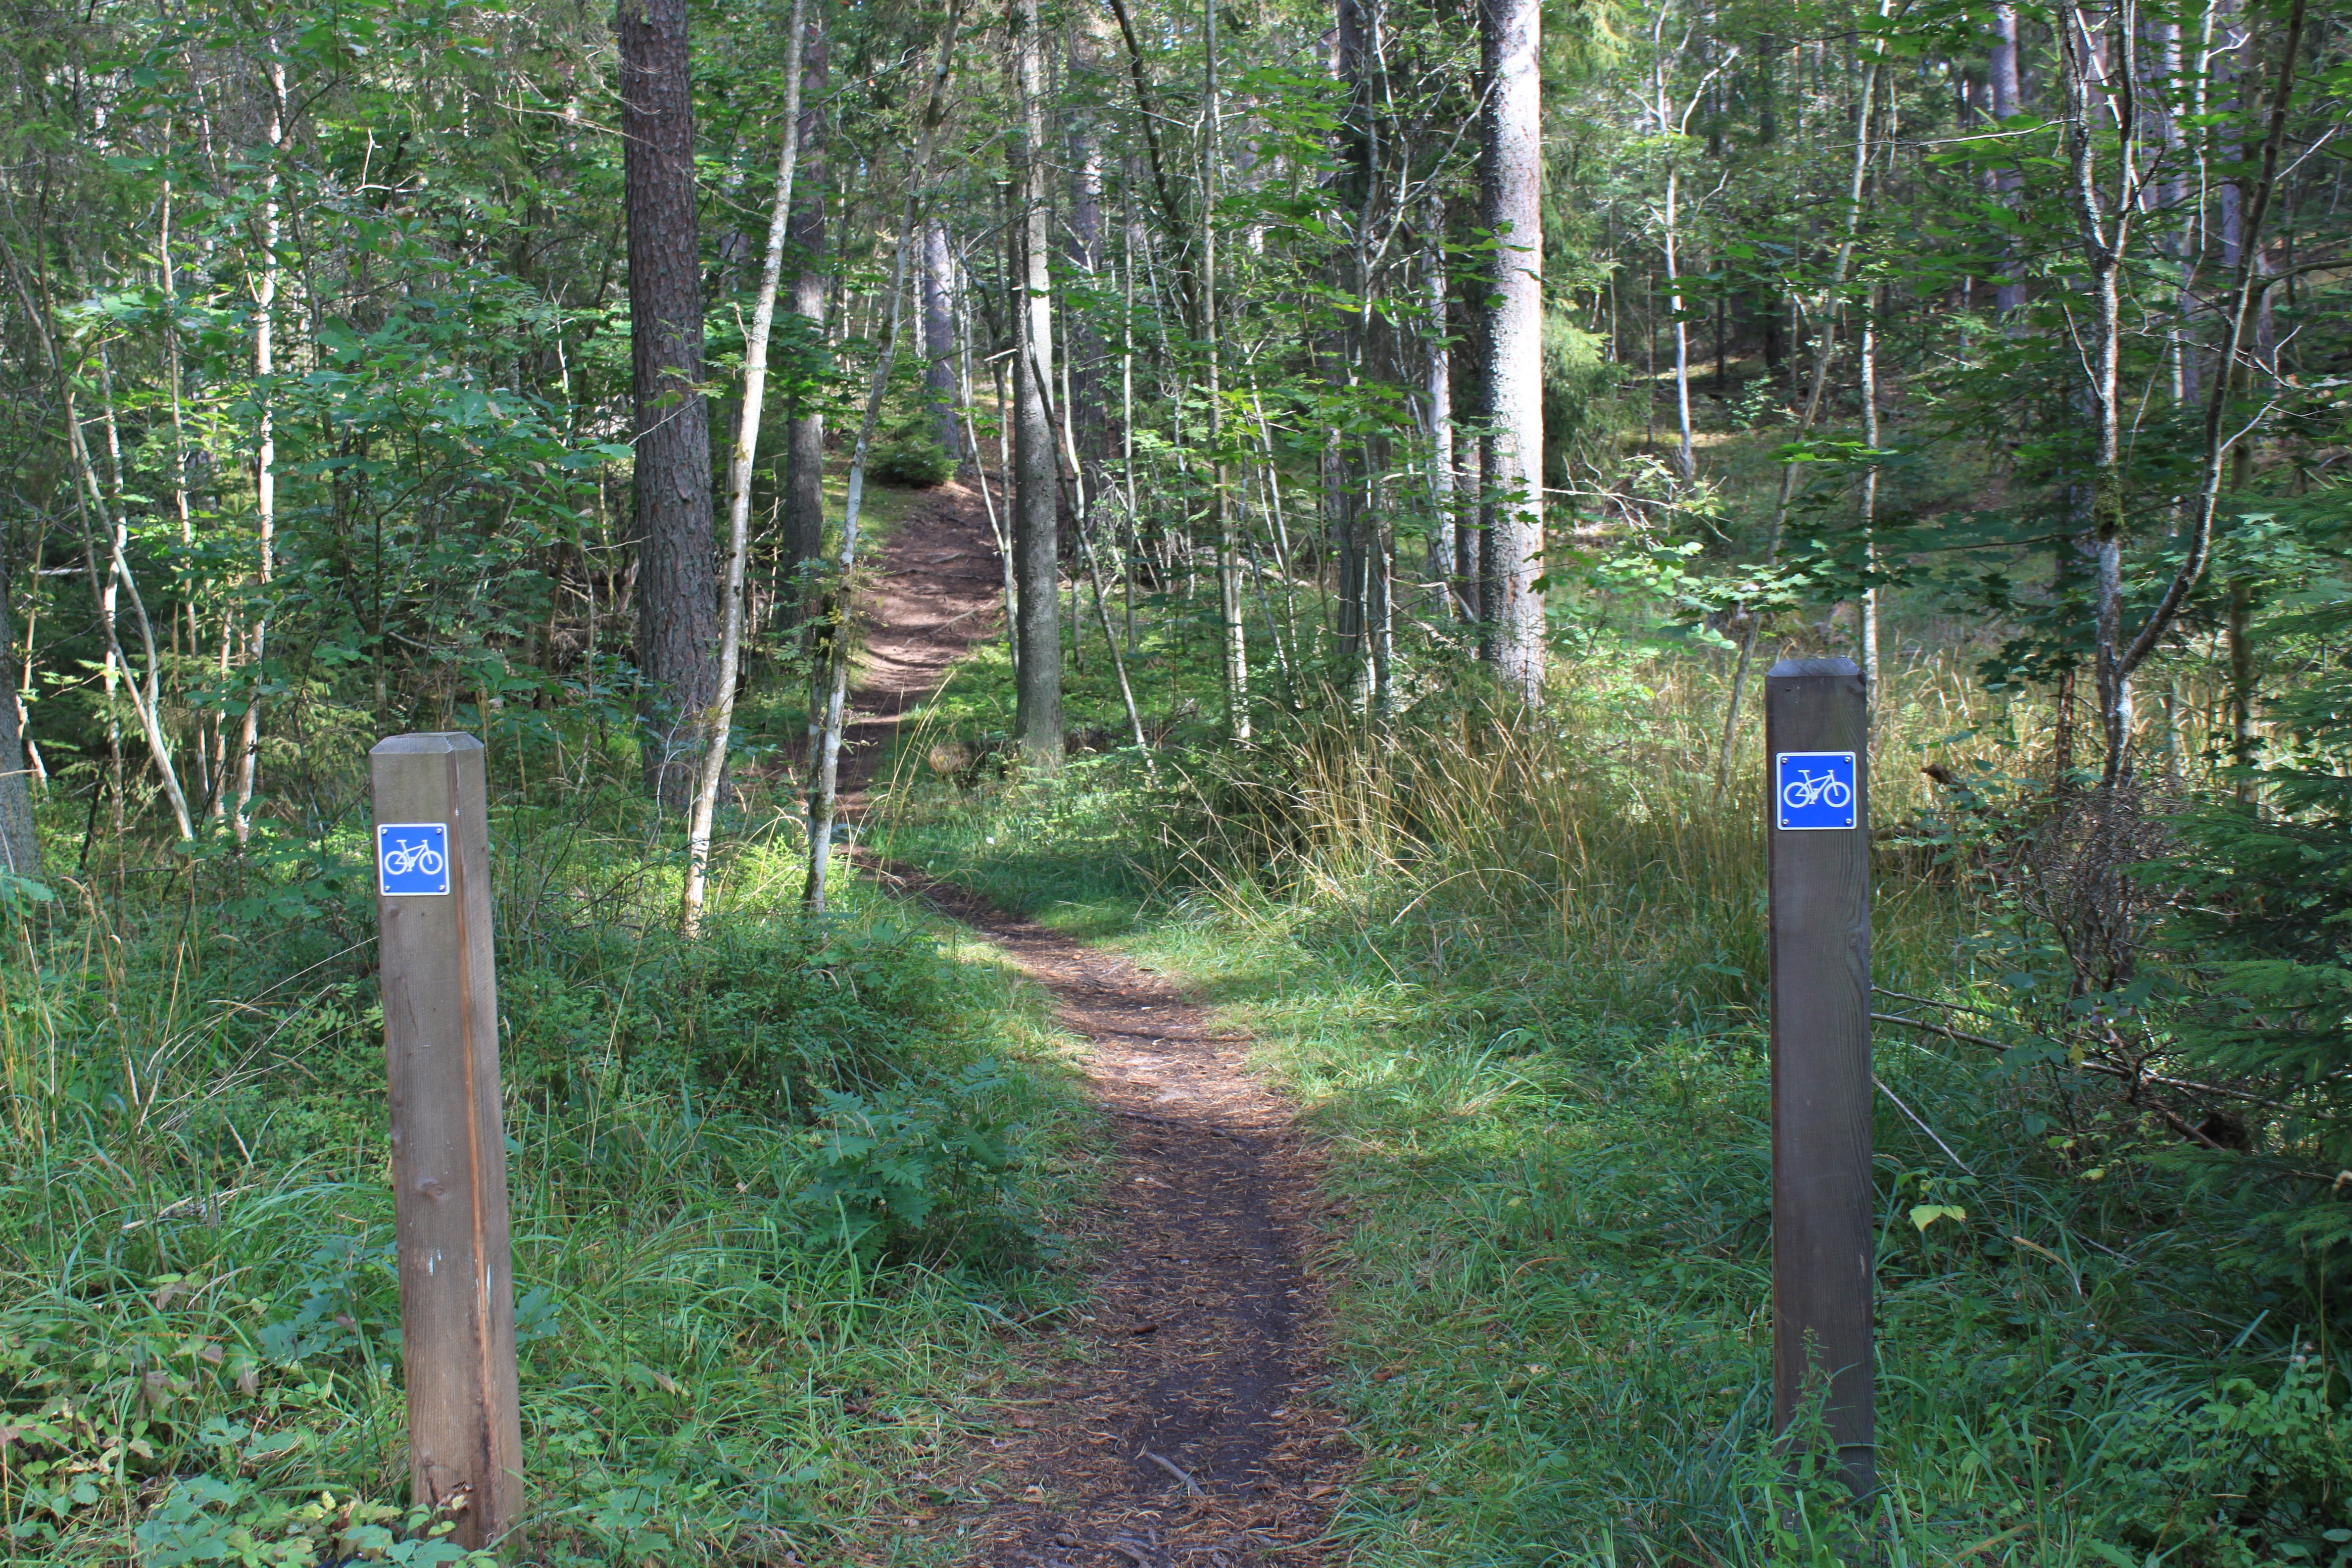 En mycket smal och kuperad stig går genom skogen. Två stolpar står på varsin sida av stigen med varsin skylt som visar att det är en cykelled.